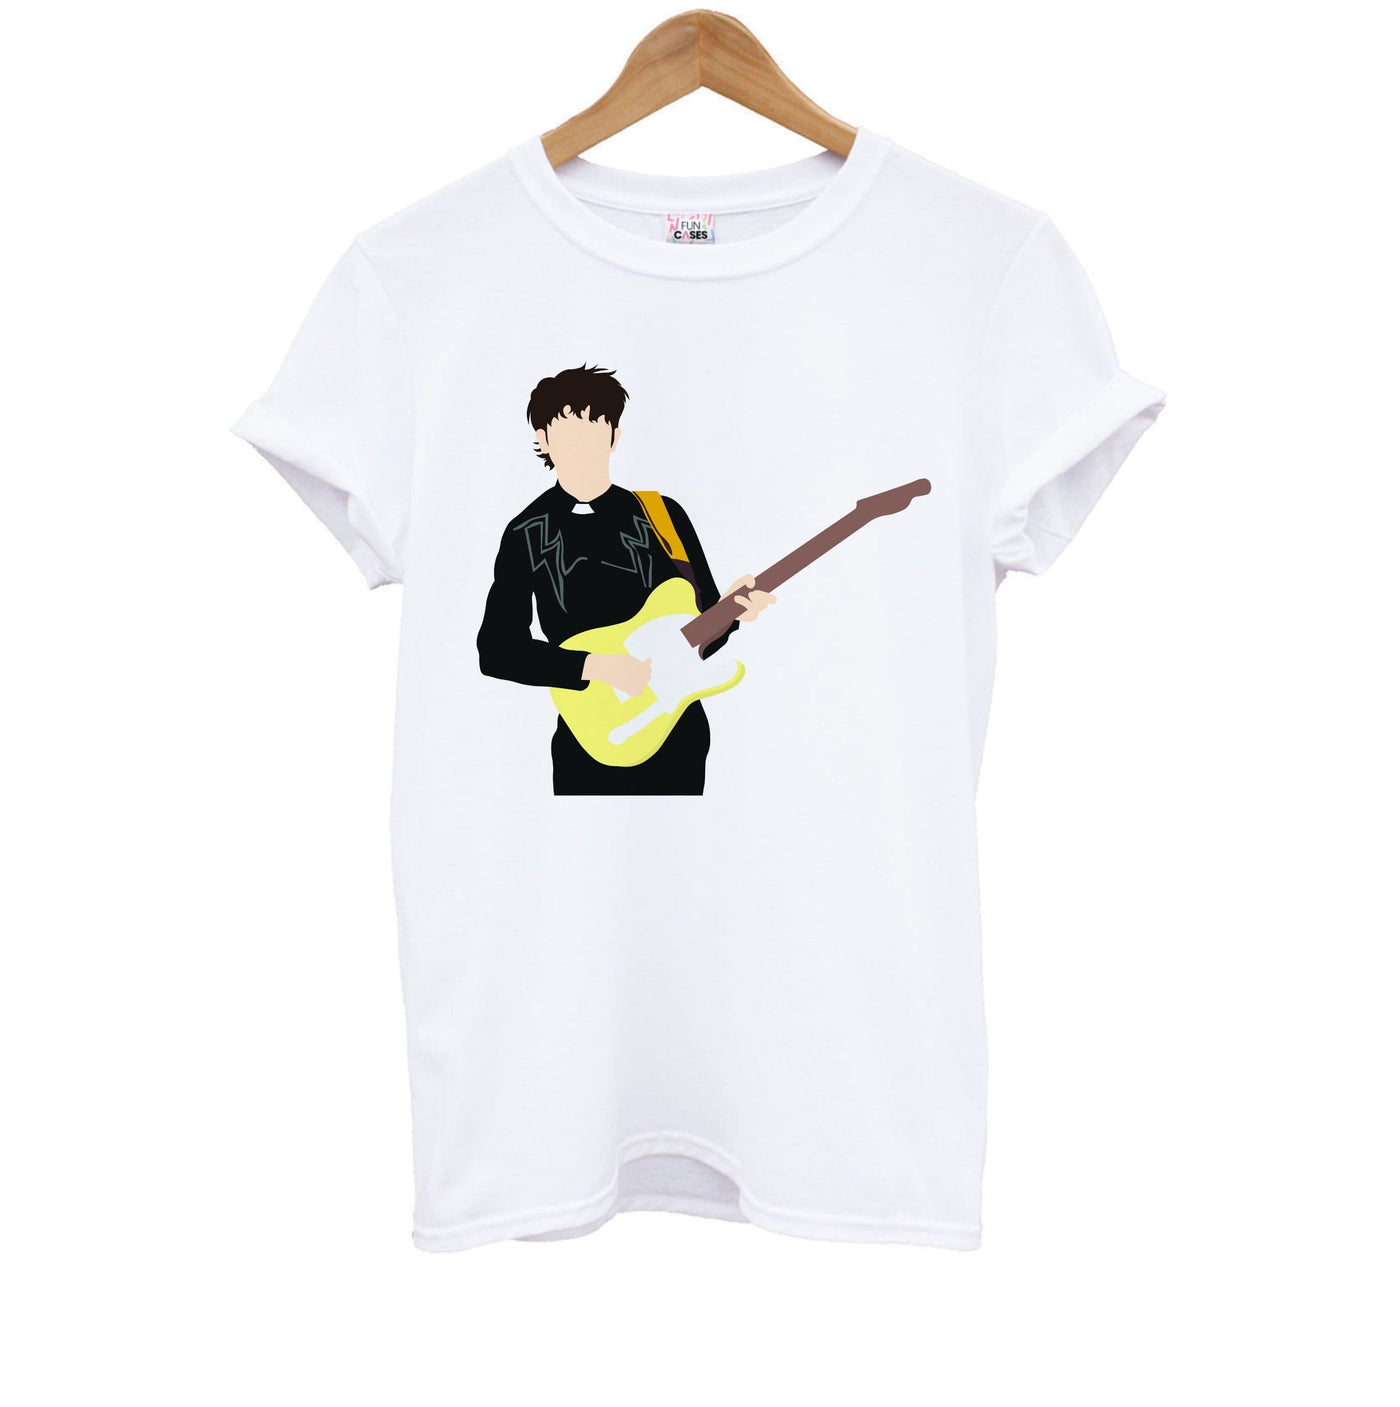 Guitar - Declan Mckenna Kids T-Shirt